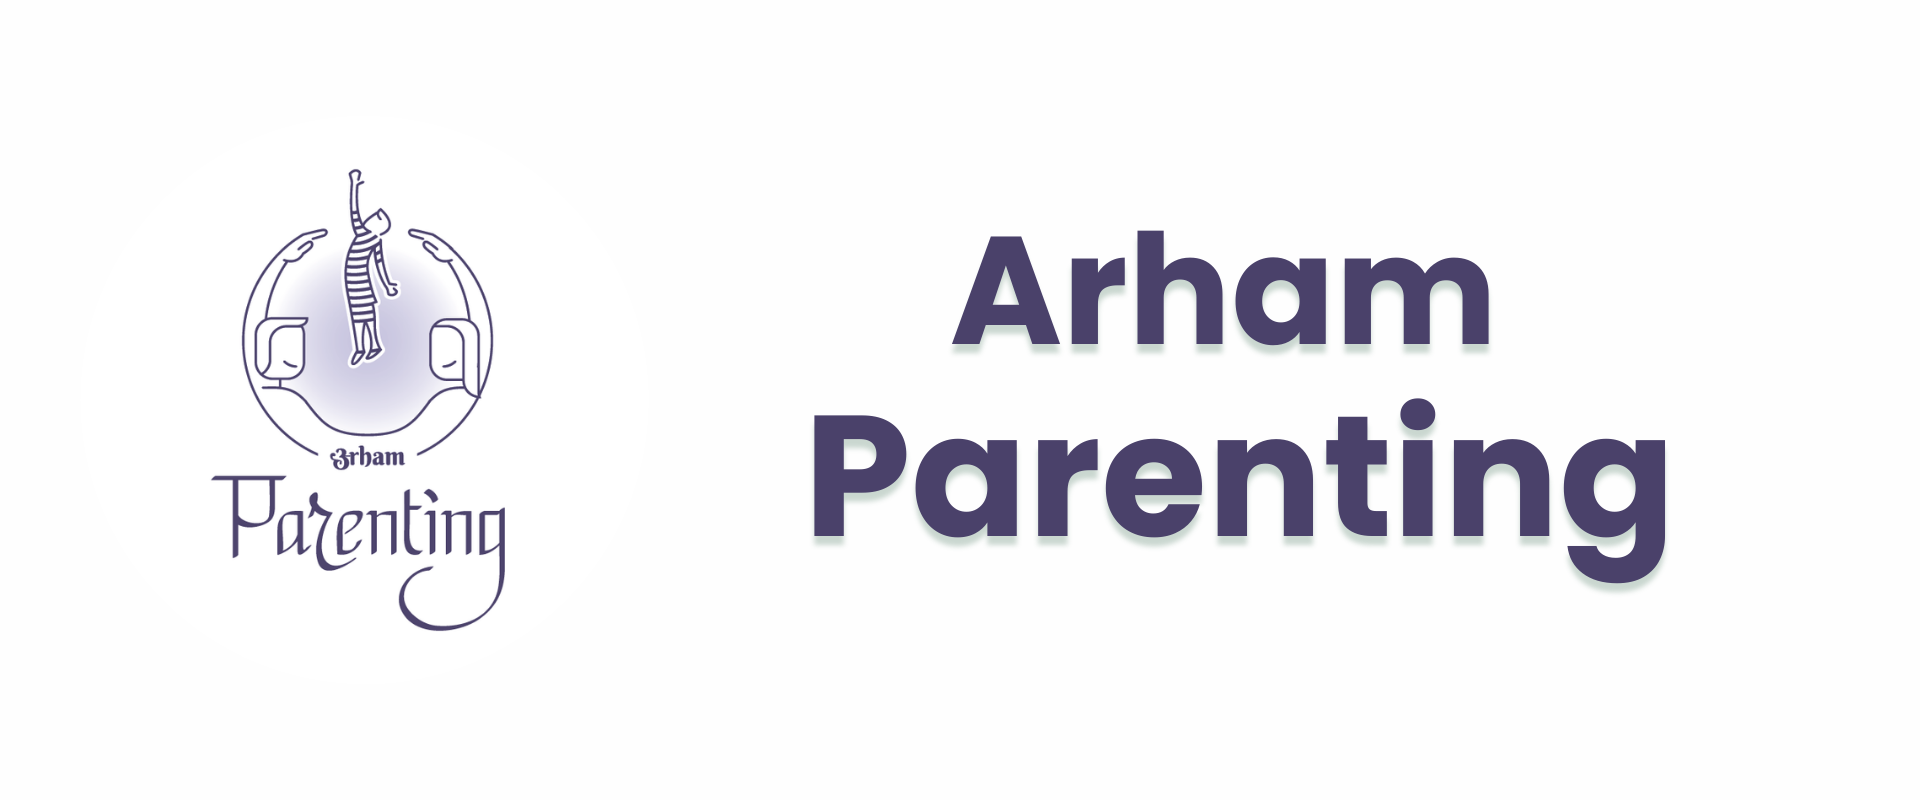 Arham Parenting